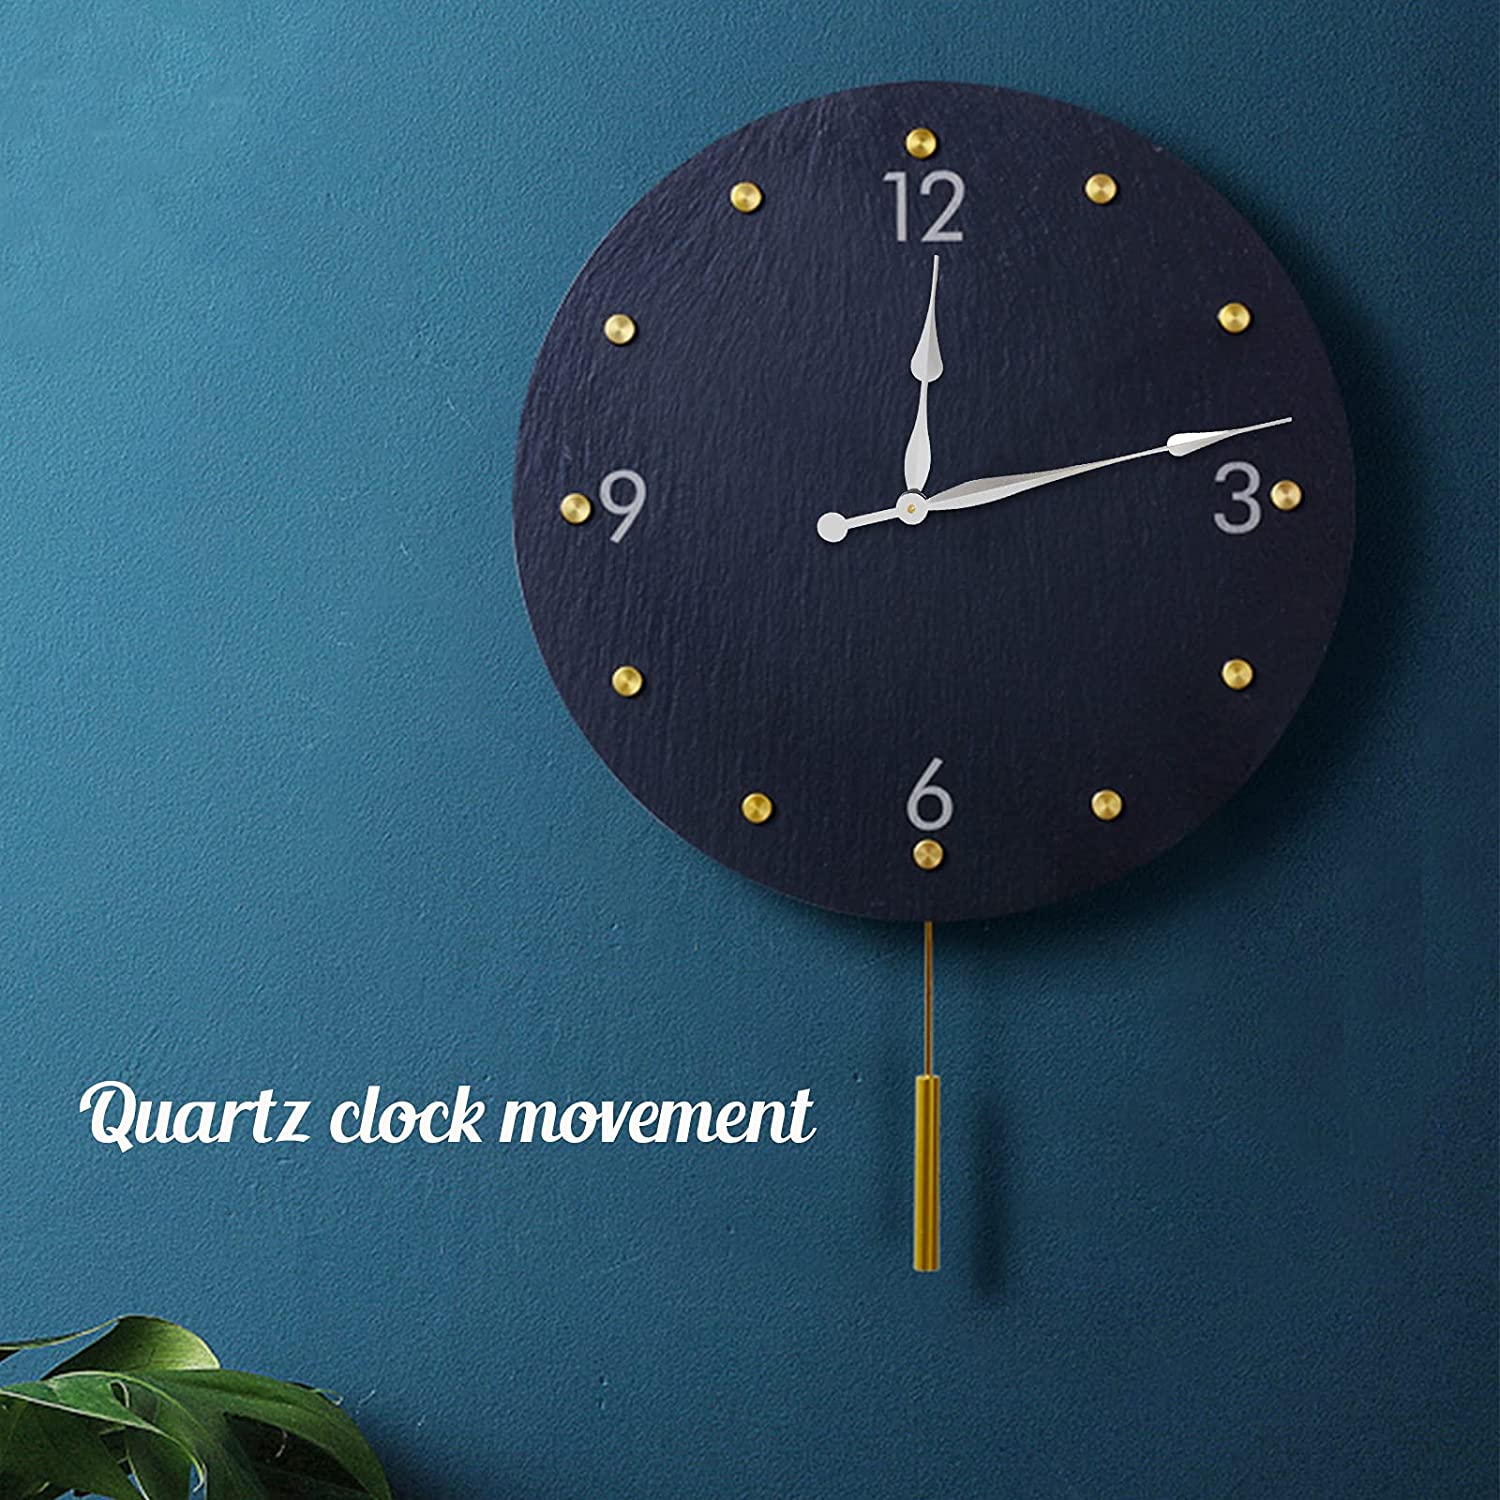 JJDD High Torque Clock Movement,23MM Long Shaft Clock Movement Mechanism with Hands. - e4cents